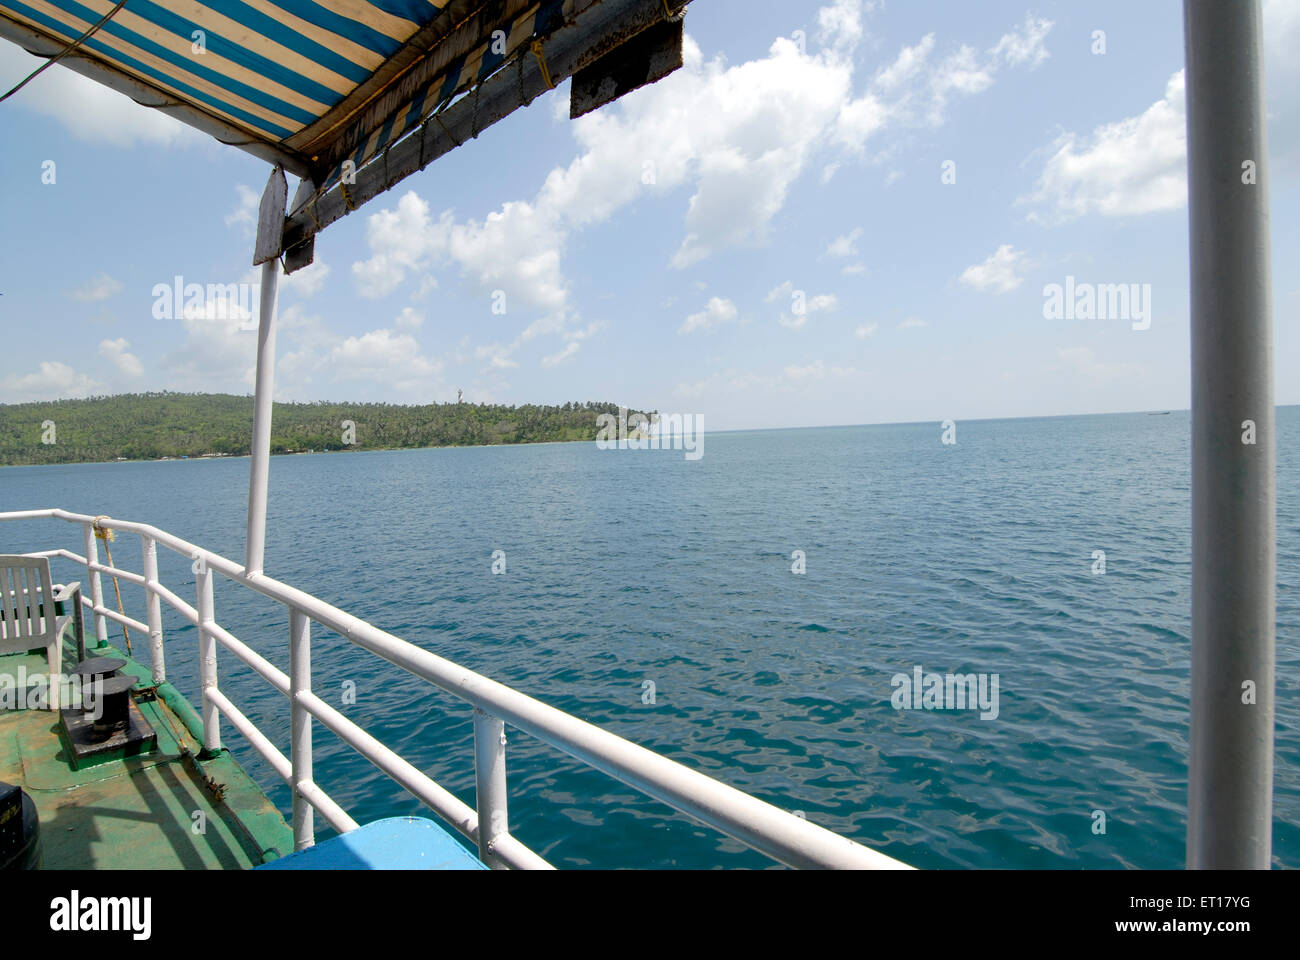 Vue du bateau Jolly Buoy ou Redskin ; Îles Îles Andaman du Sud ; baie du Bengale ; Inde Octobre 2008 Banque D'Images